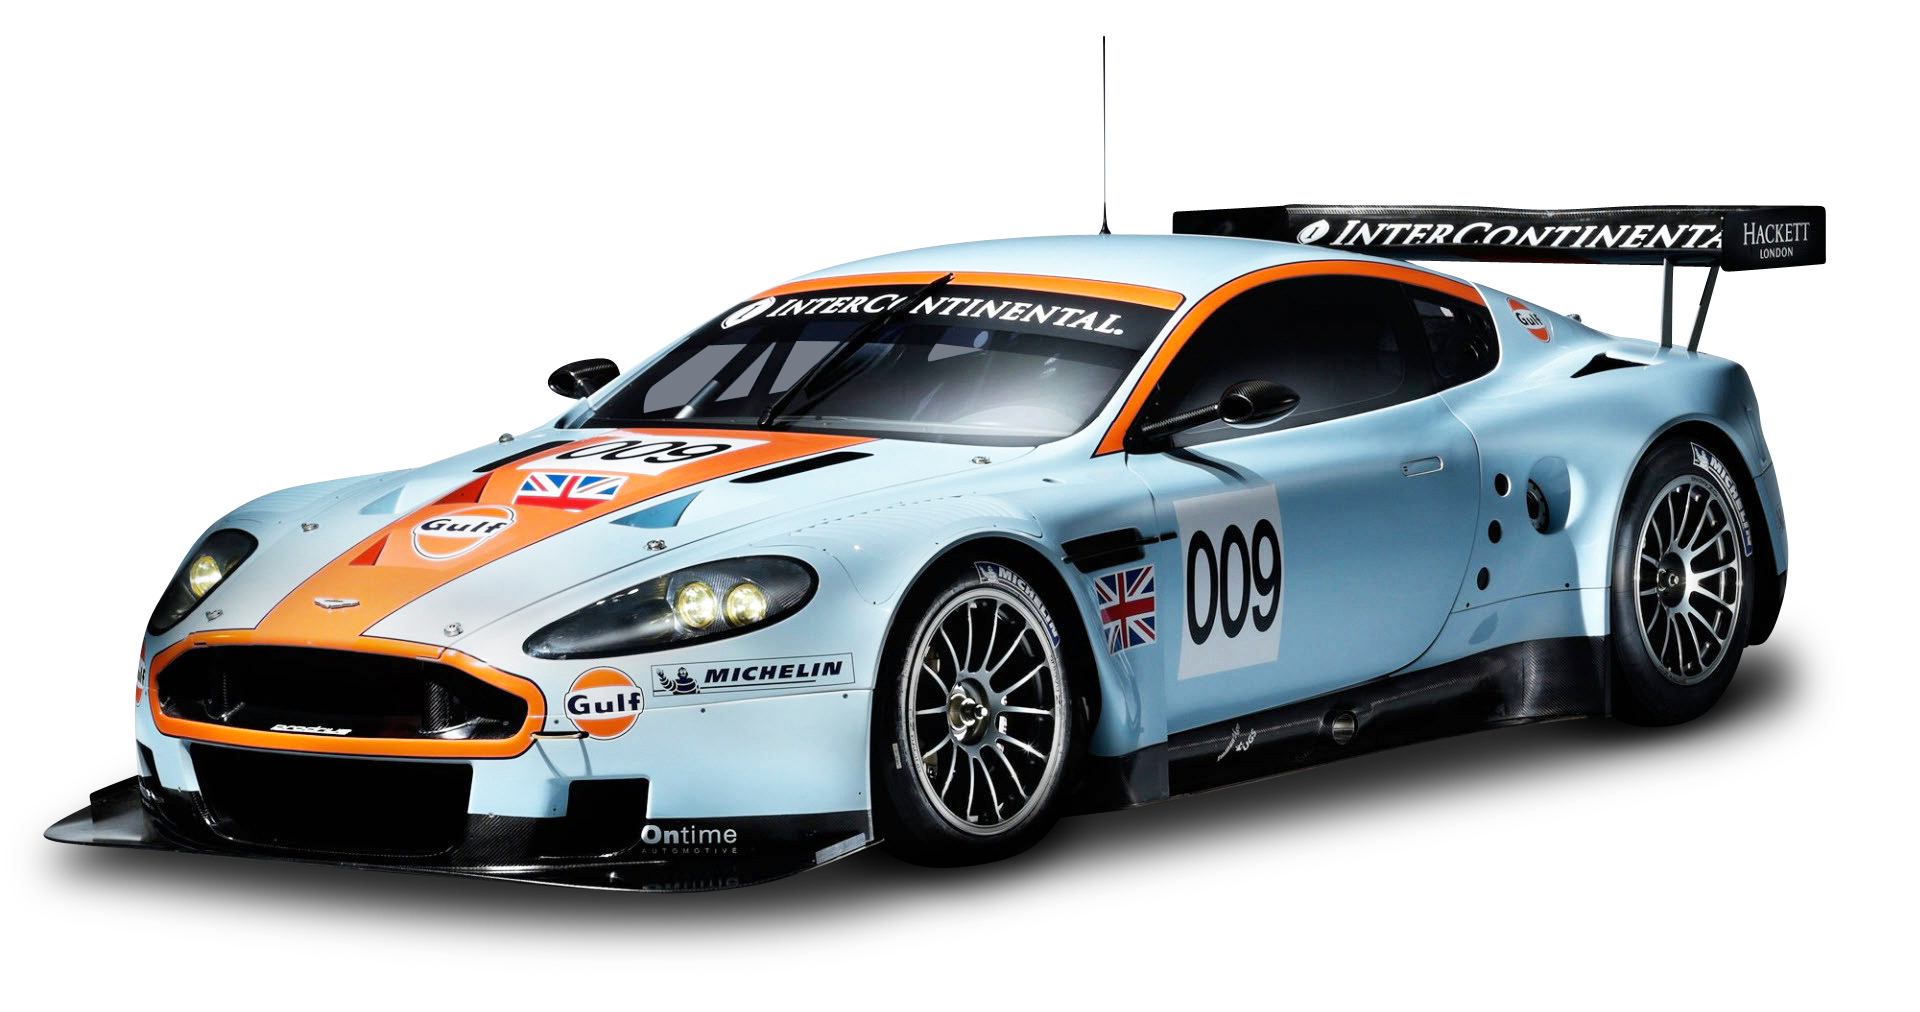 Aston Martin Racing Car